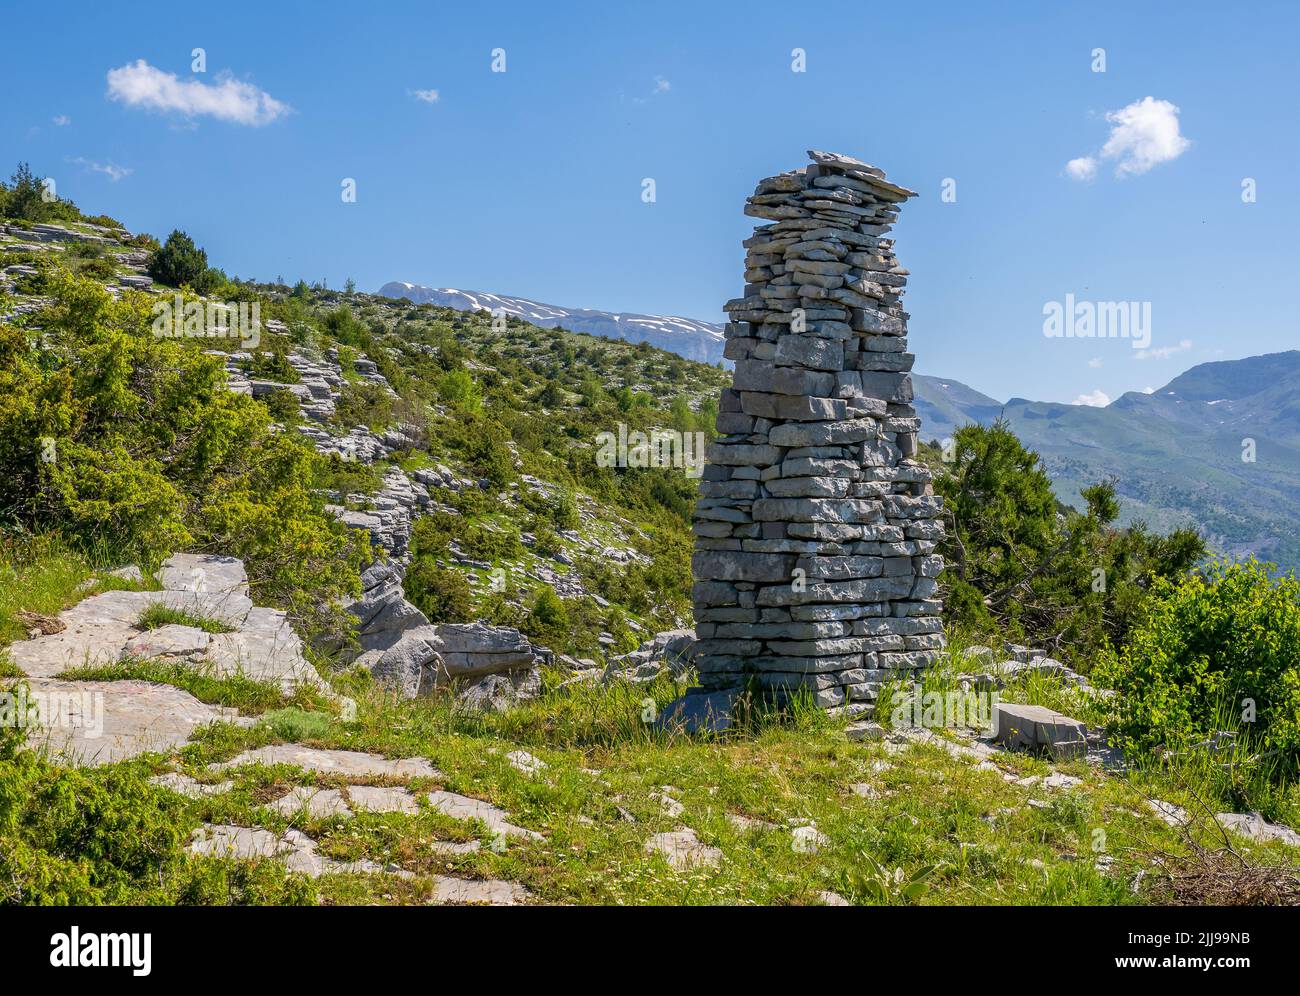 Stein-Obelisk-Steinwurf an einem Bergpfad oberhalb des Dorfes Tsepelovo in der Zagori-Region Nordgriechenlands mit dem Berg Timfi in der Ferne Stockfoto